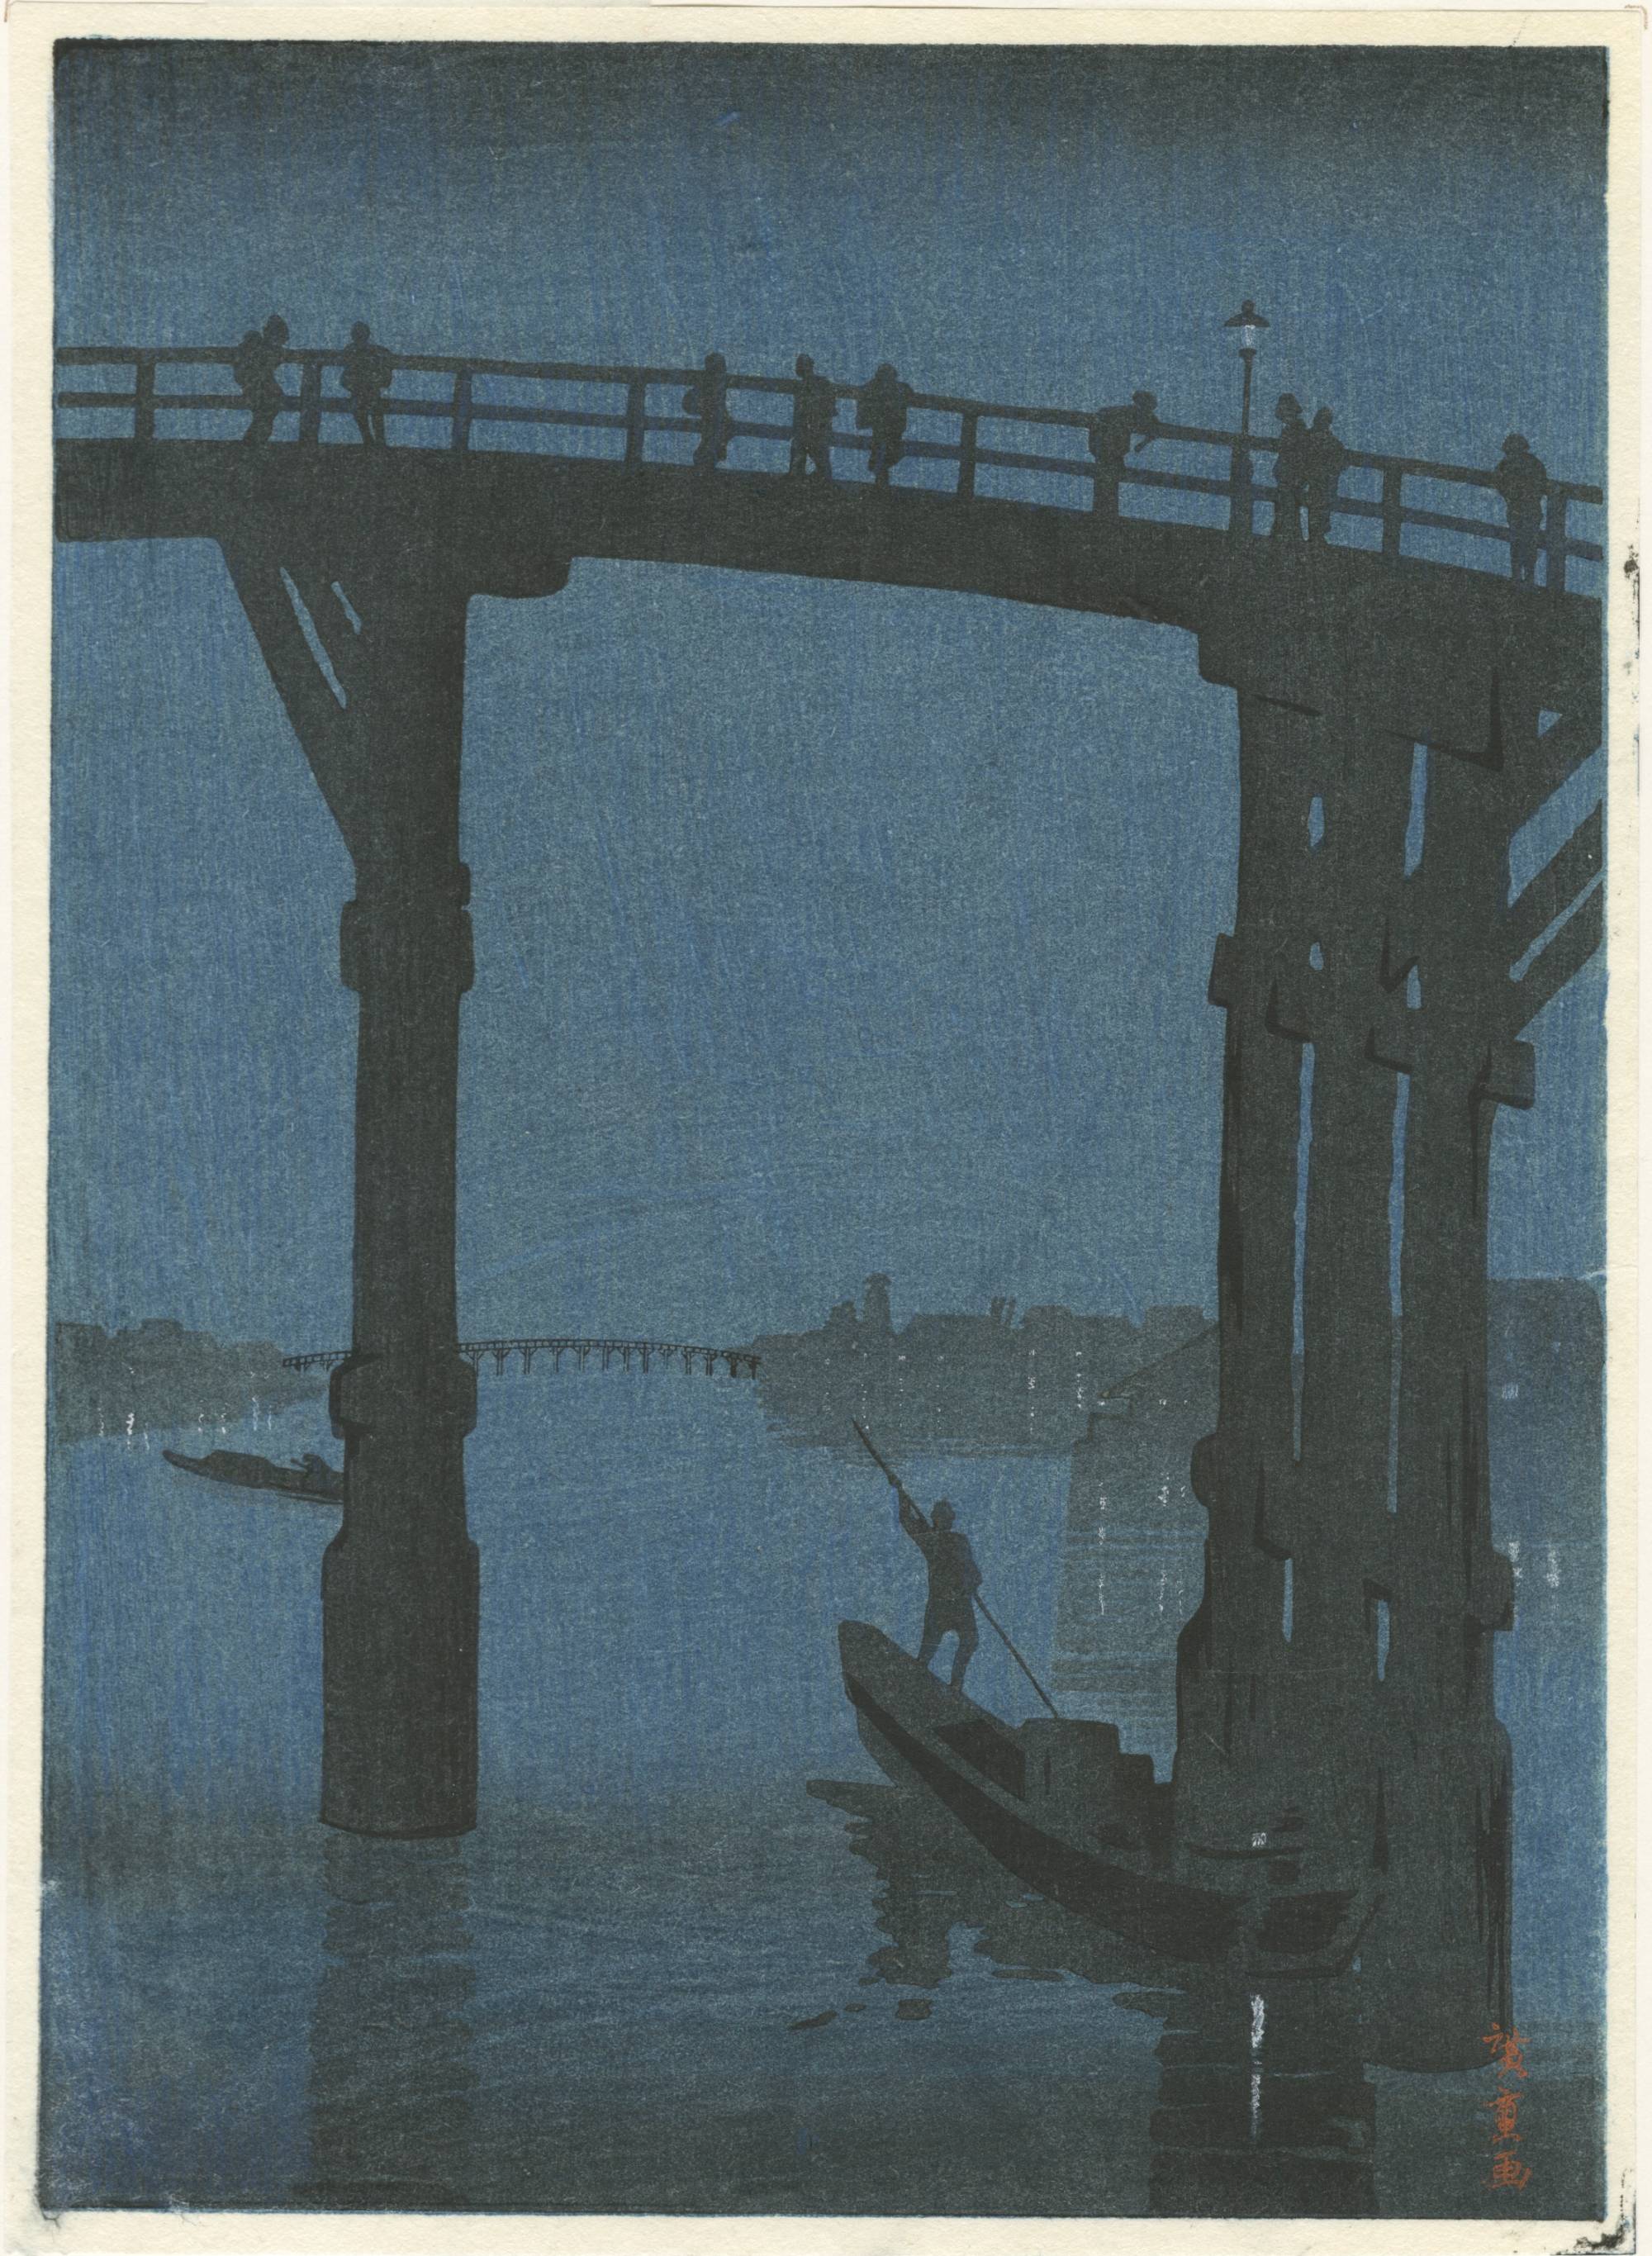 woodcut print of bridge over river at night